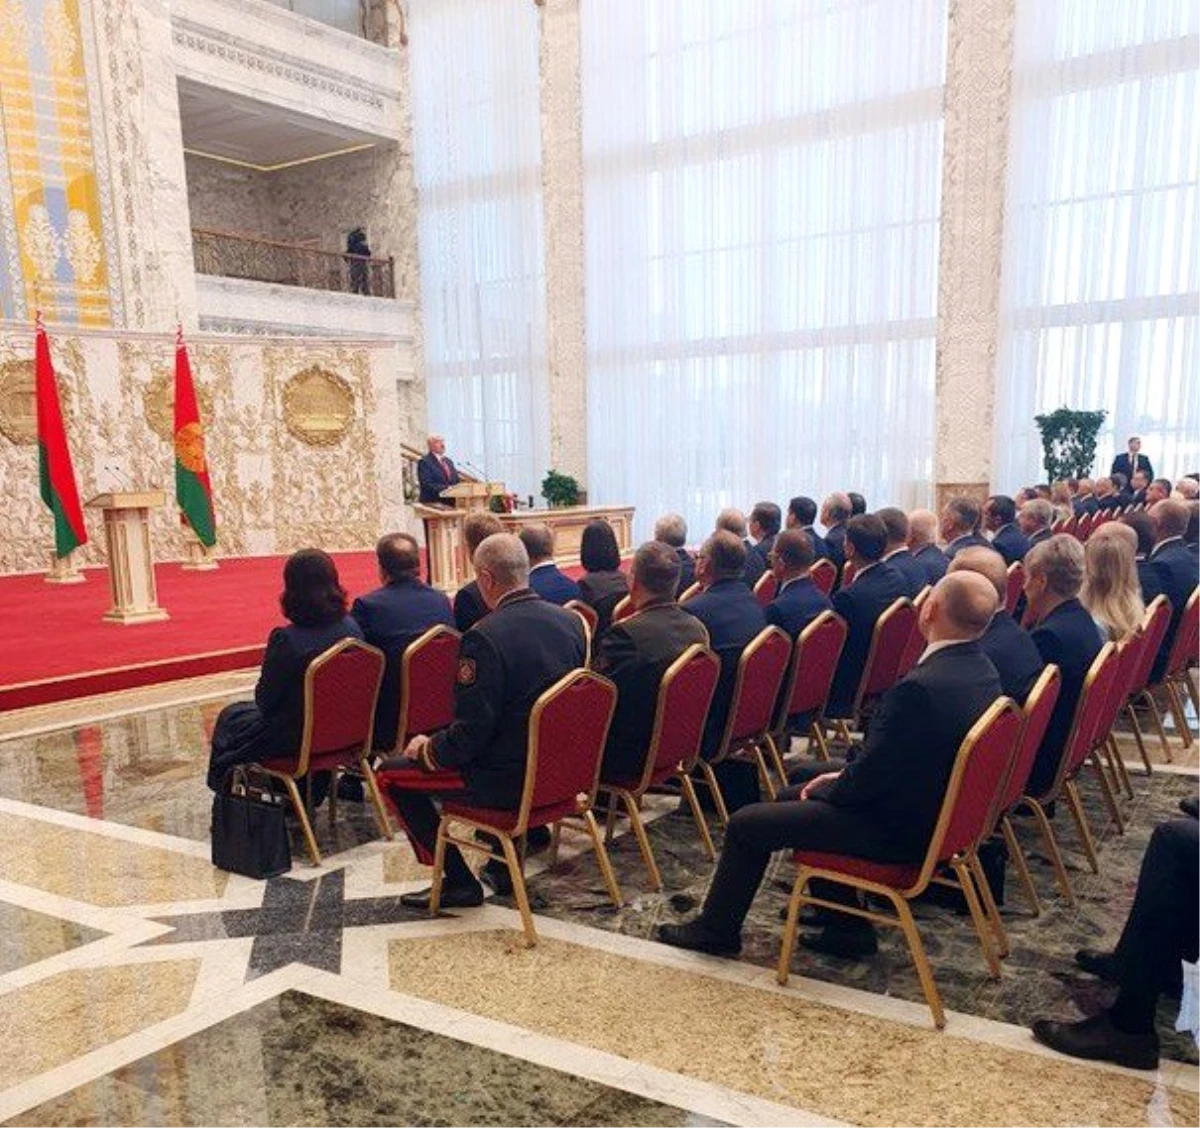 Belarus Devlet Başkanı Lukaşenko gizli törenle yemin etti